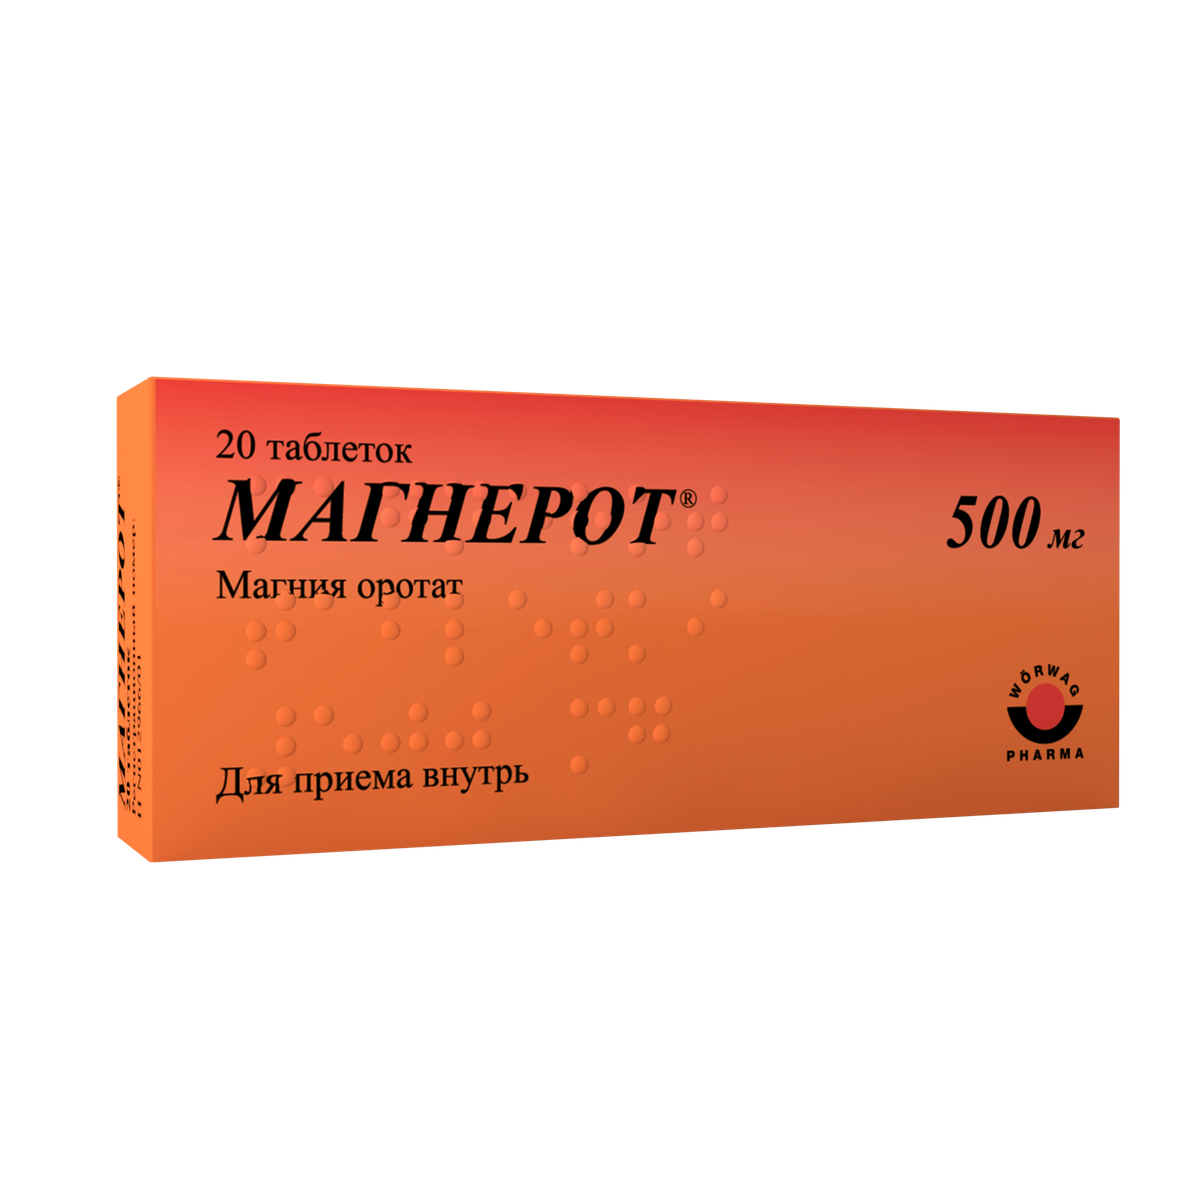 Магнерот (таблетки, 20 шт, 500 мг, для приема внутрь) - цена,  .